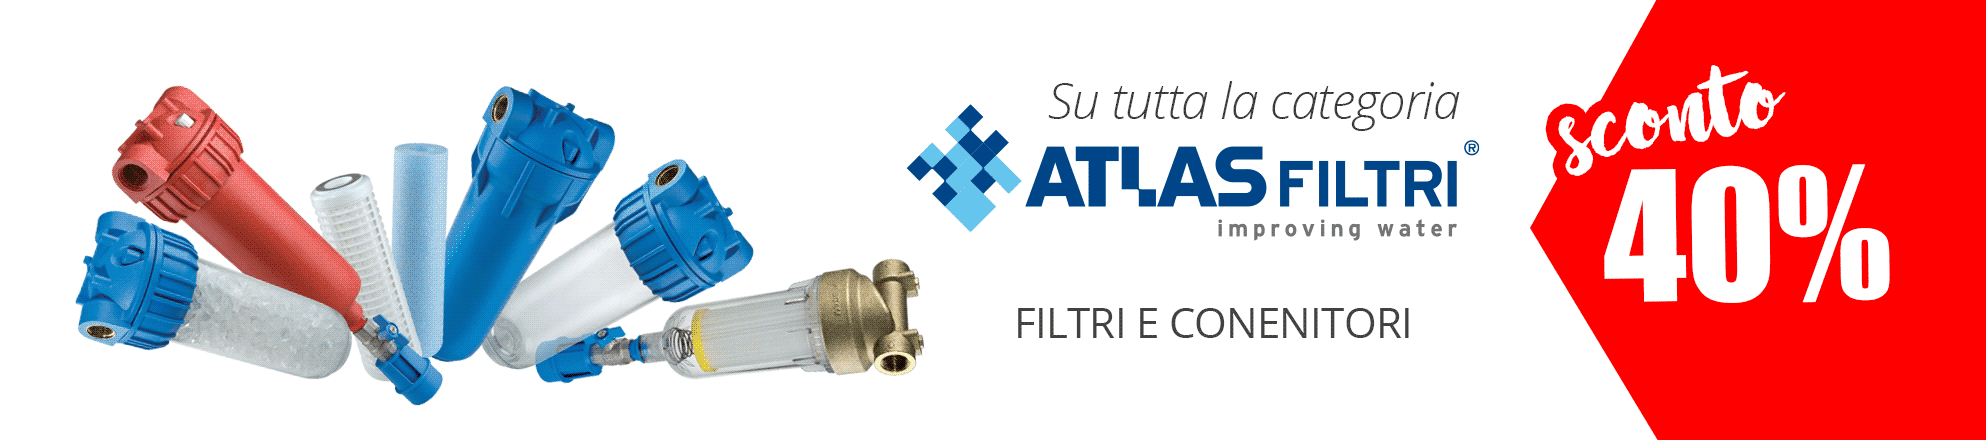 Fiiltri e ricambi Atlas Filtri Italia